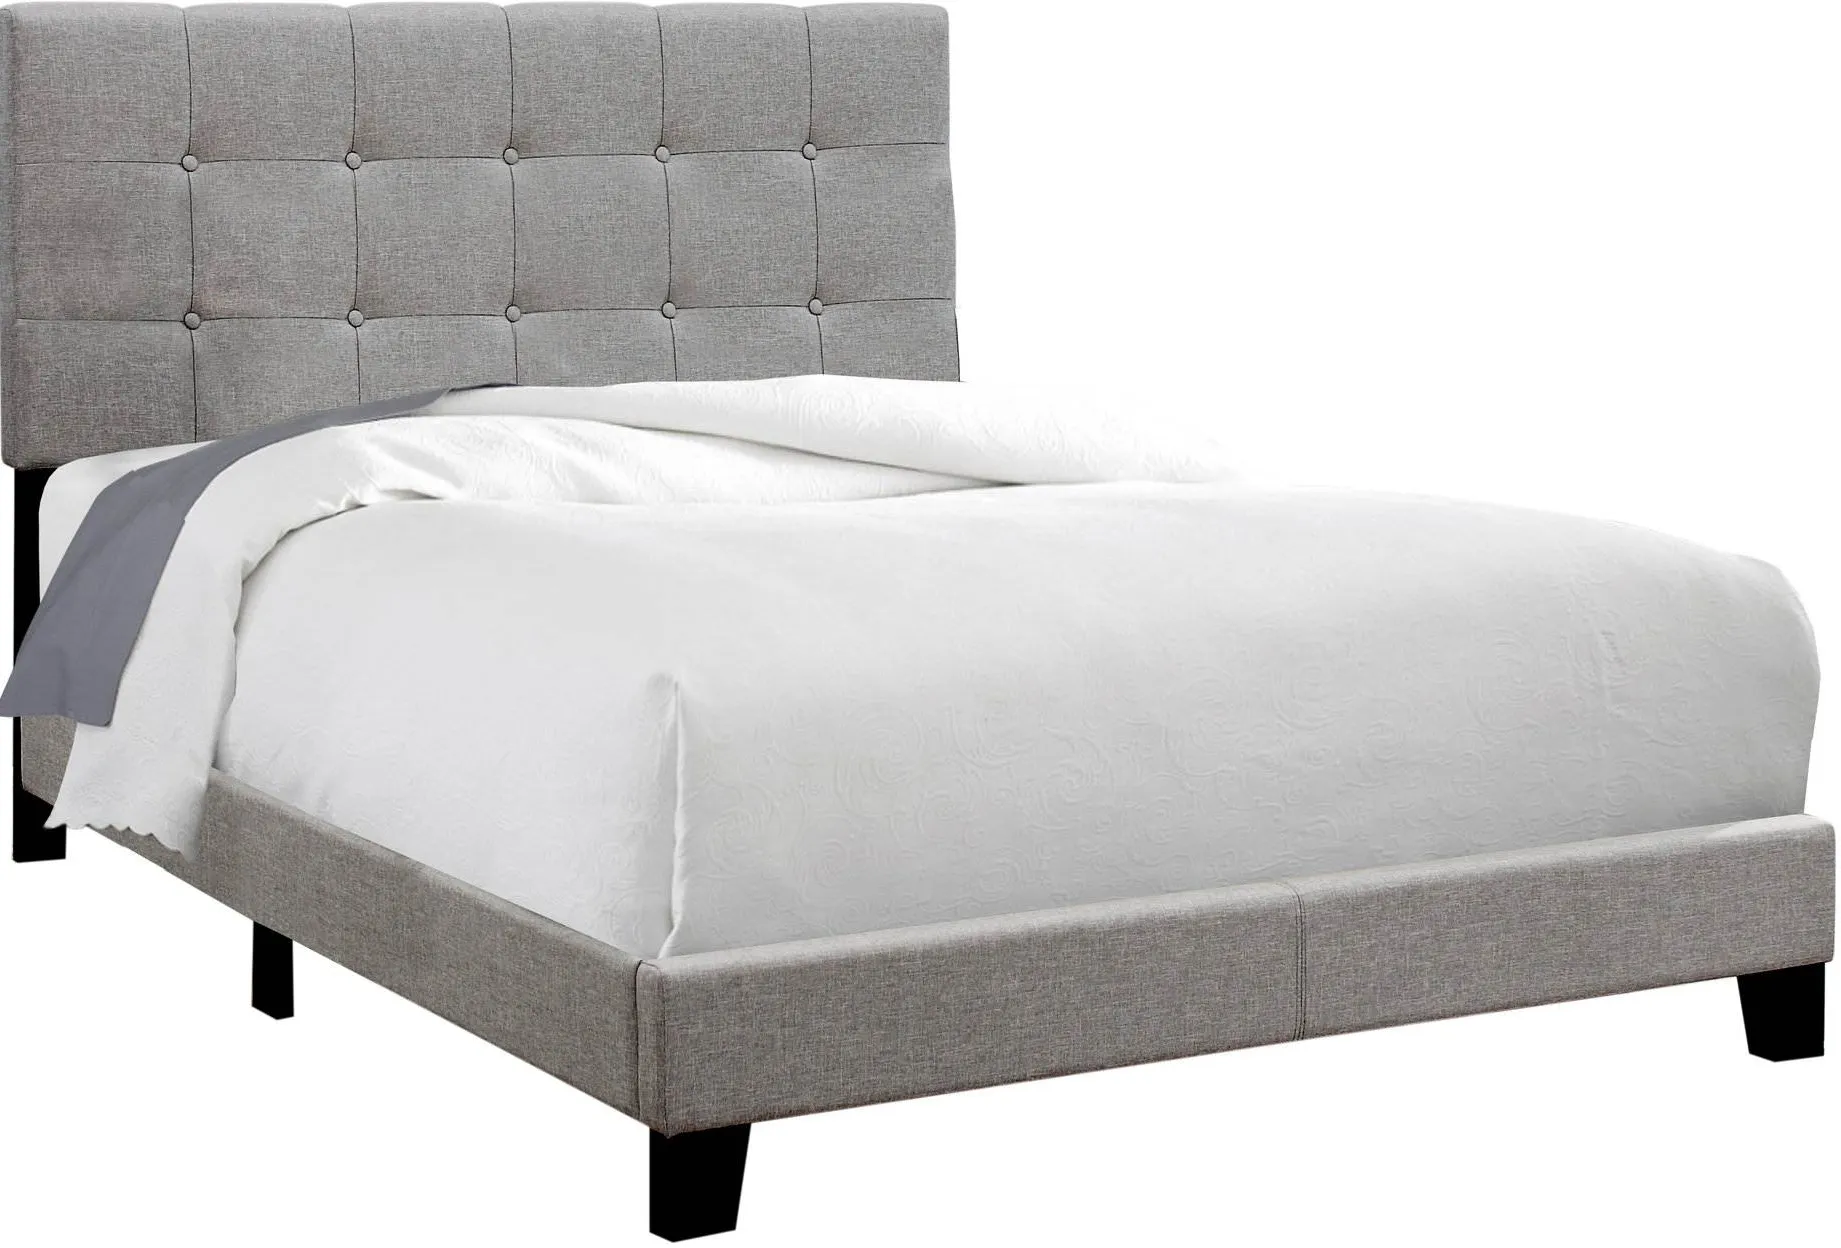 Bed, Full Size, Platform, Bedroom, Frame, Upholstered, Linen Look, Wood Legs, Grey, Transitional